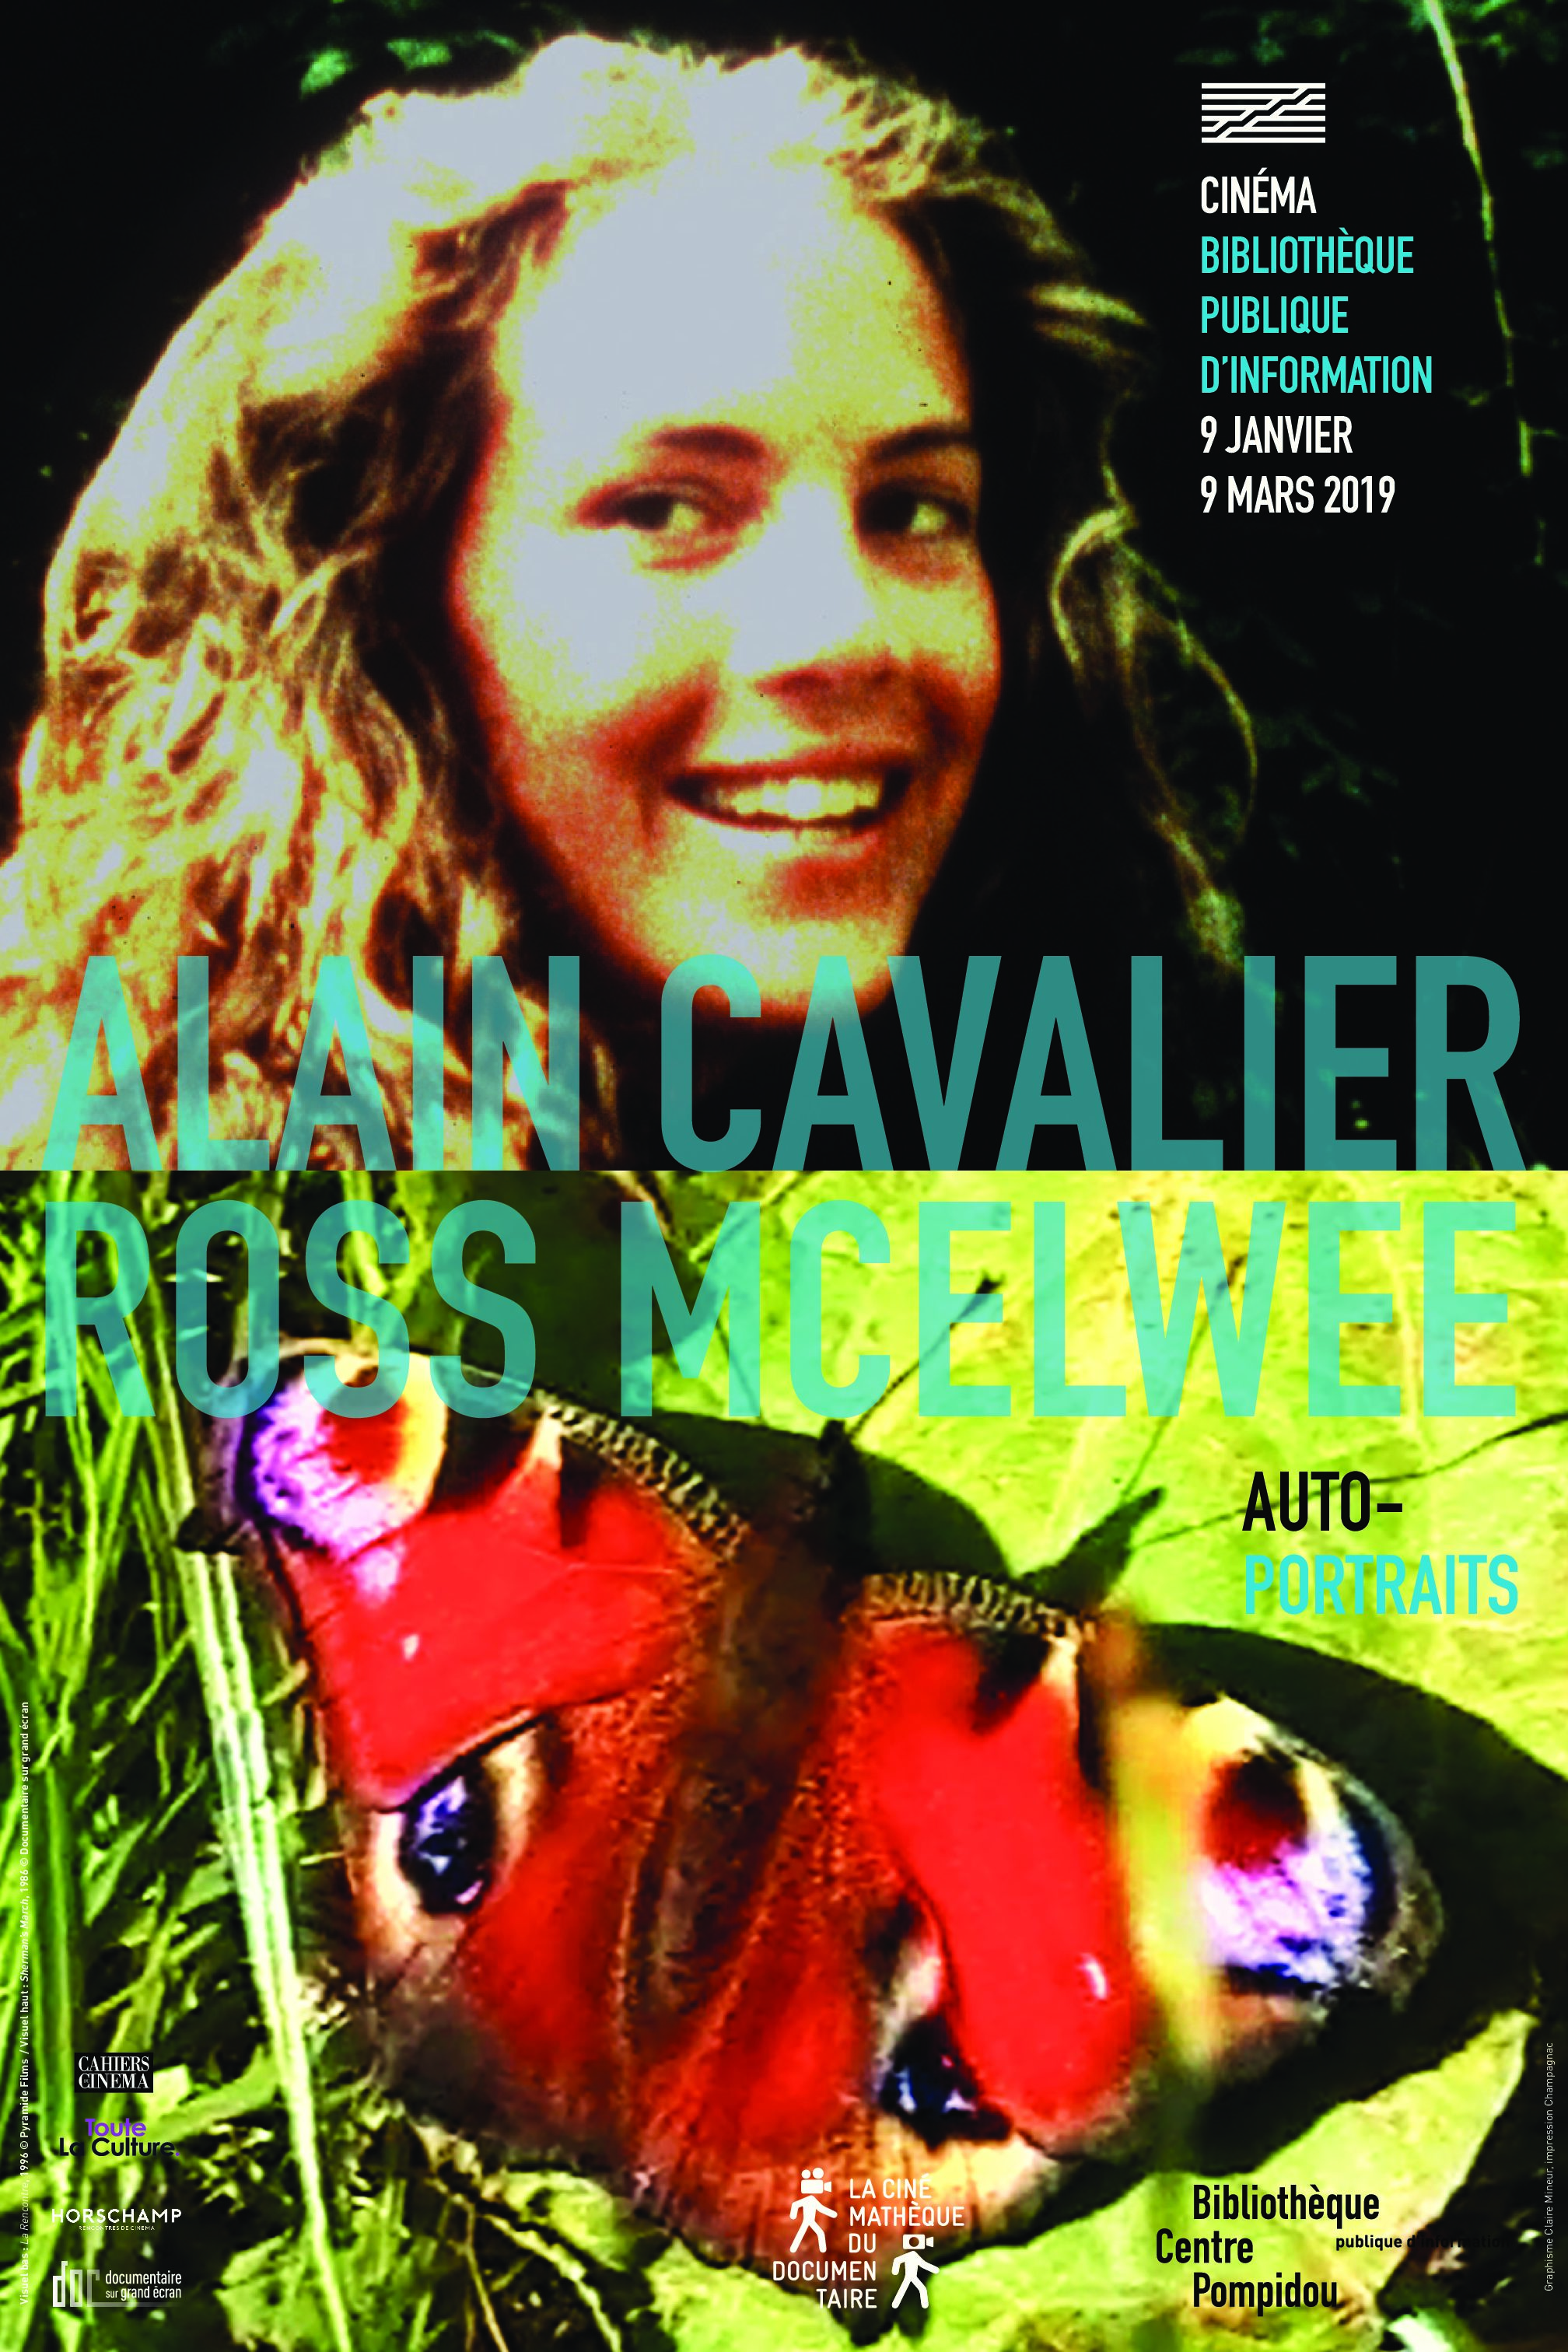 Alain Cavalier – Ross McElwee du 9 janvier au 9 mars au Centre Pompidou